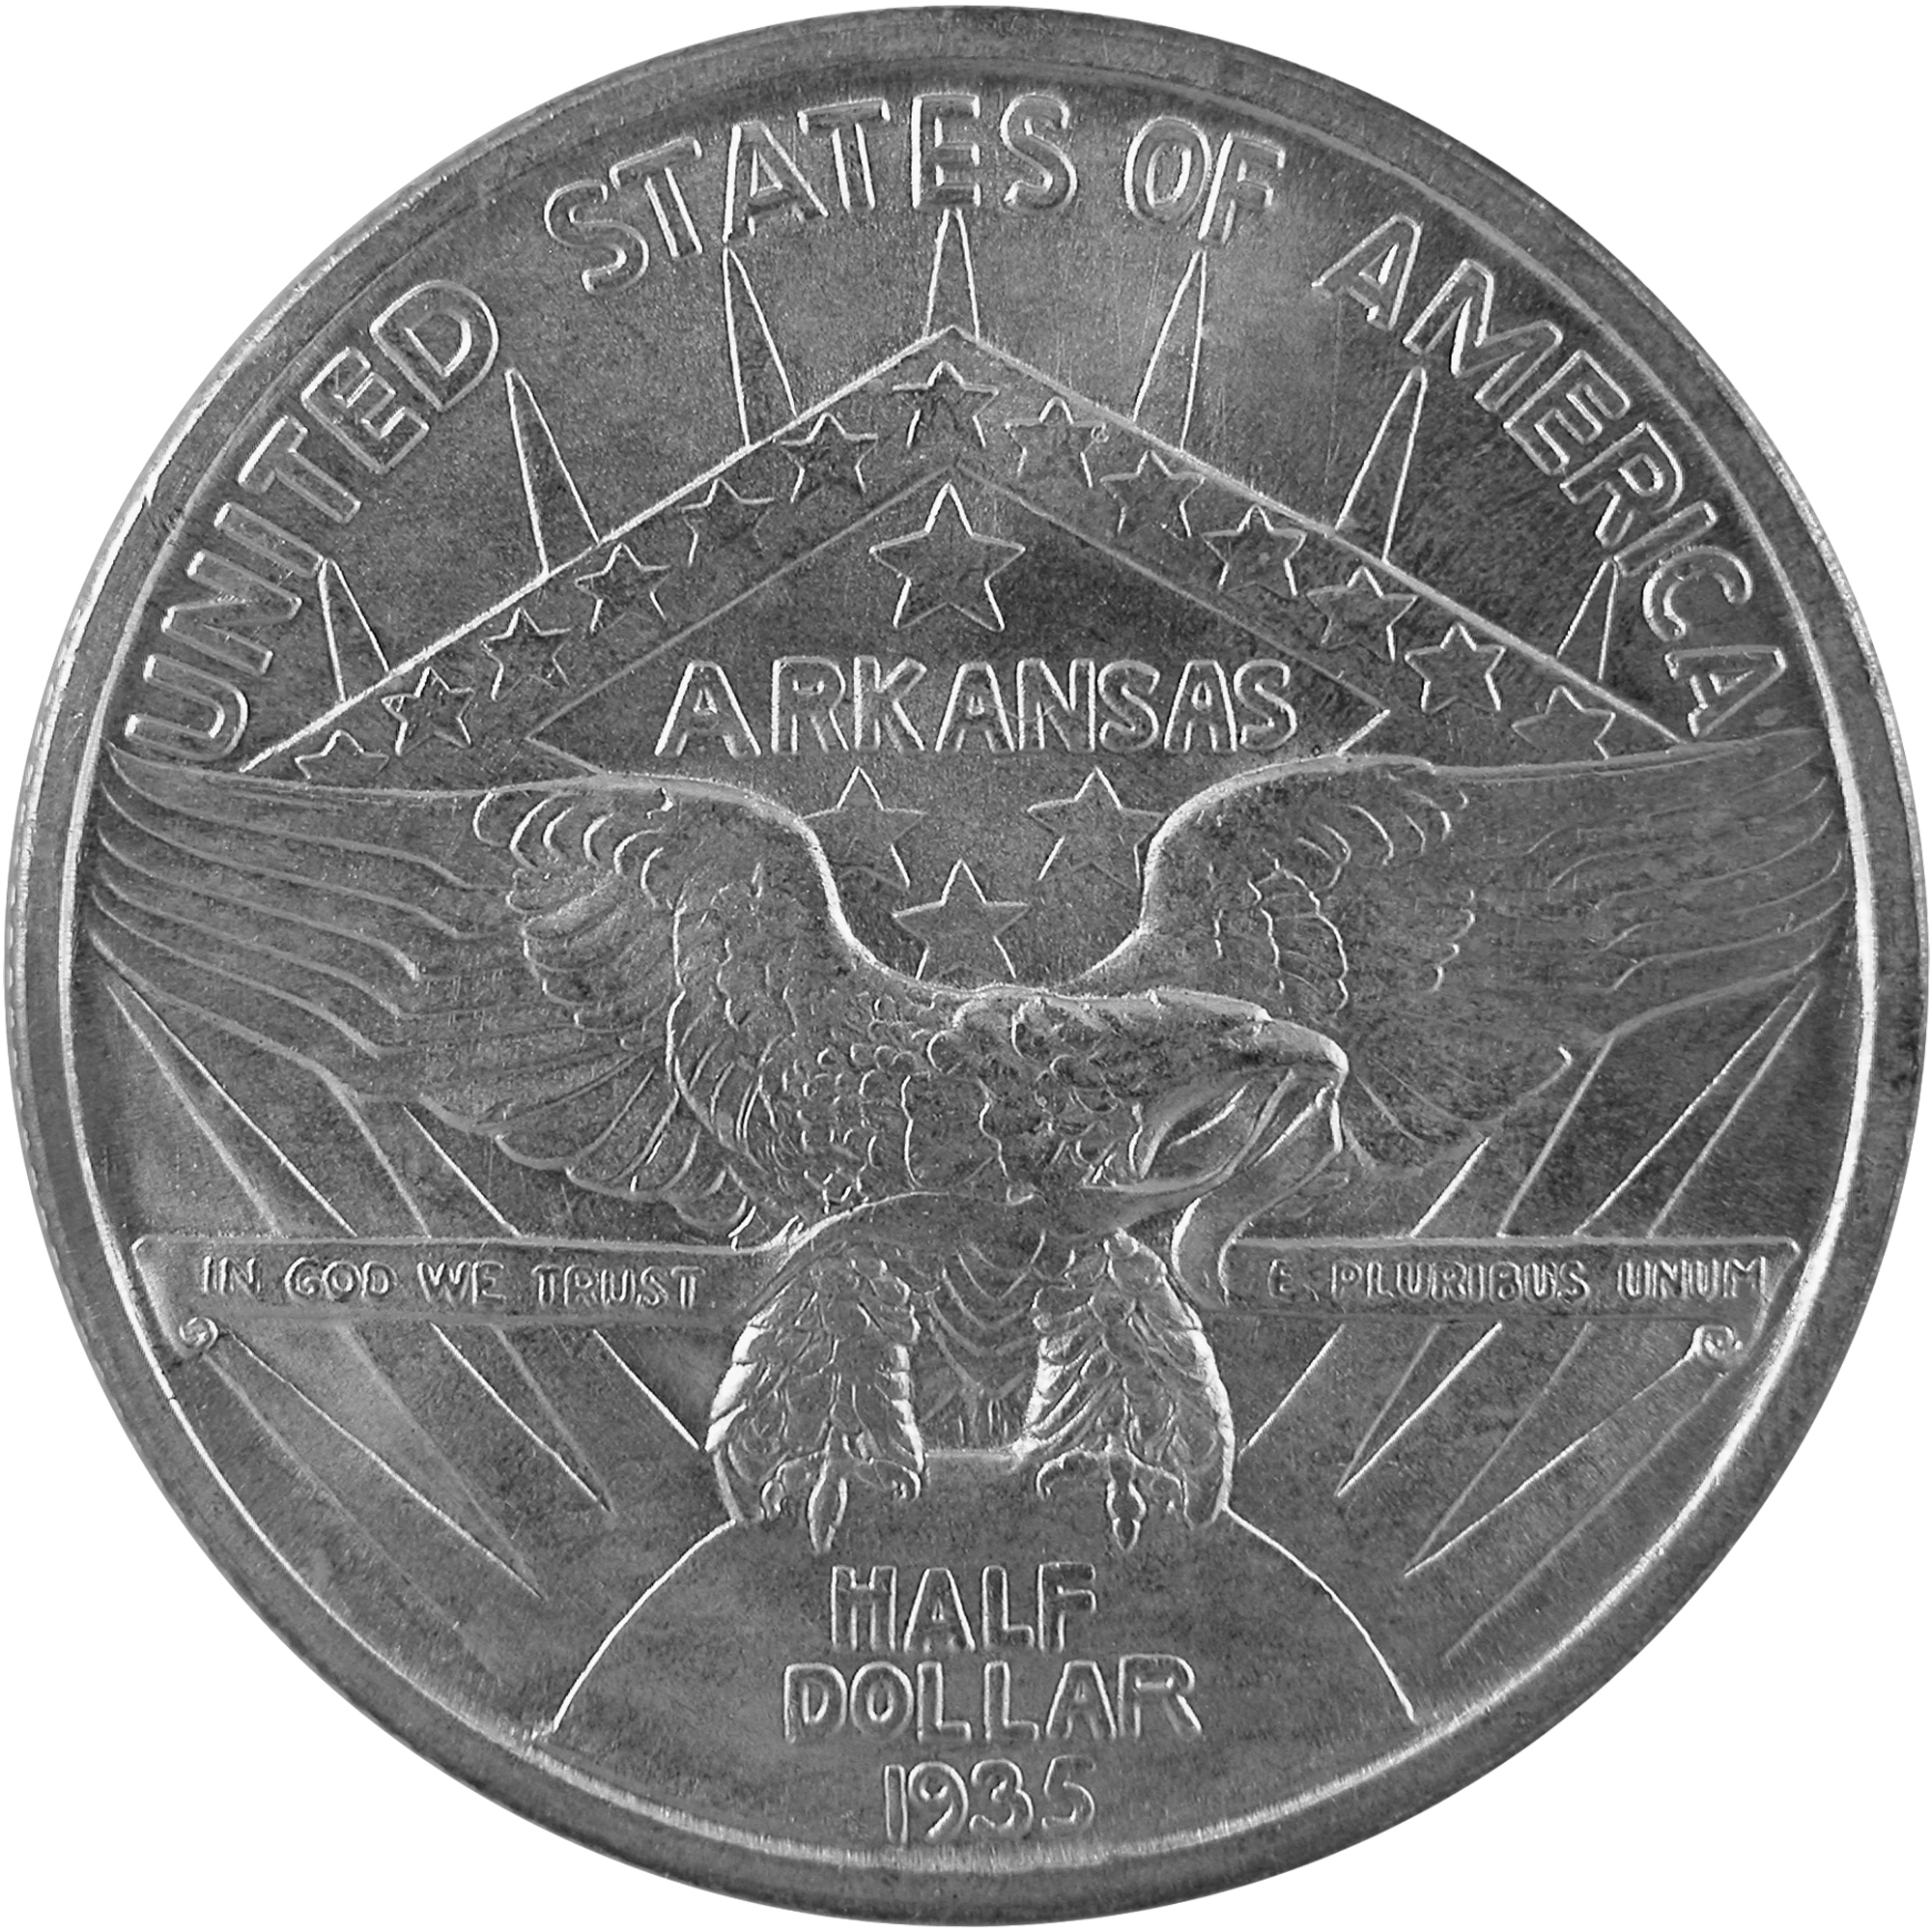 1935 Arkansas Centennial Commemorative Silver Half Dollar Coin Obverse